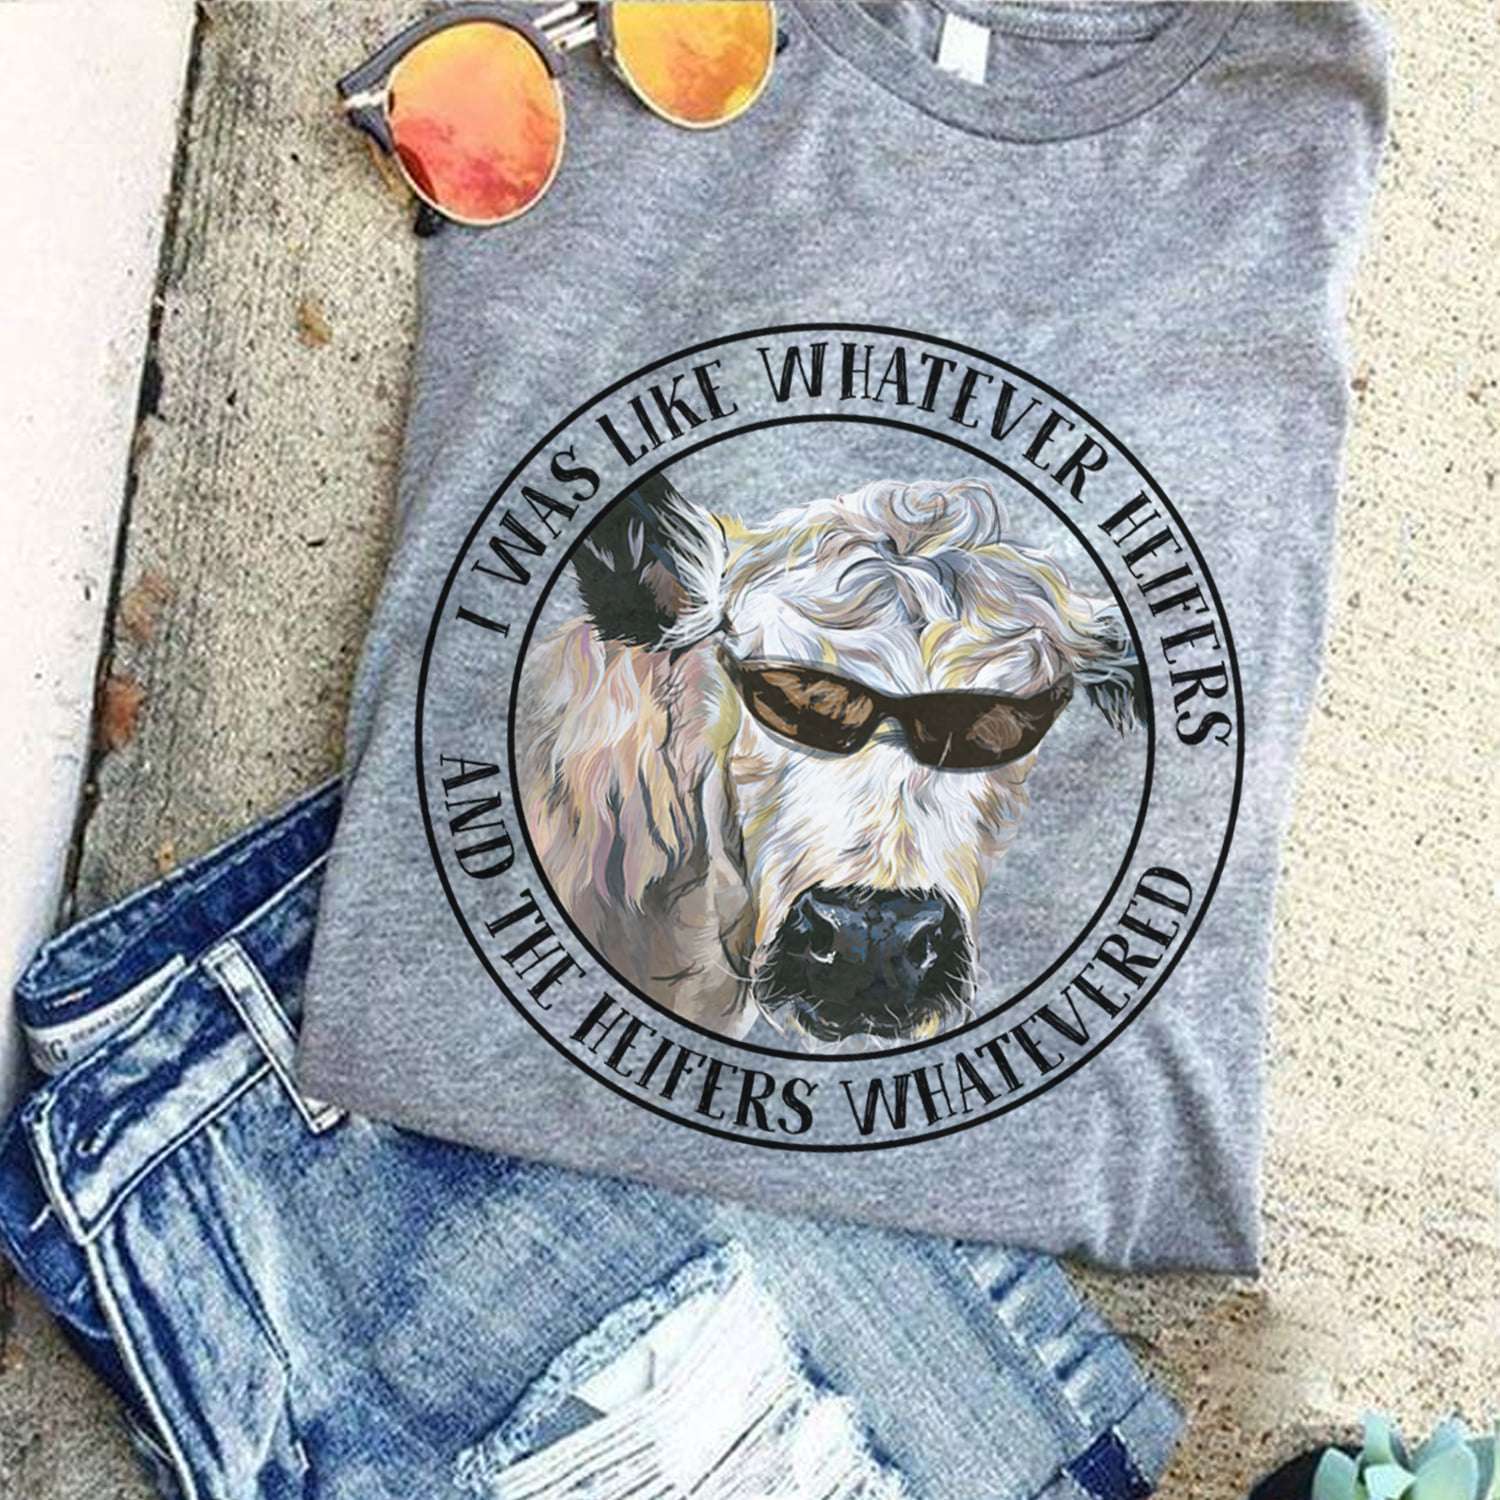 I was like whatever heifers and the heifers whatevered - cow heifer, heifer with sunglasses